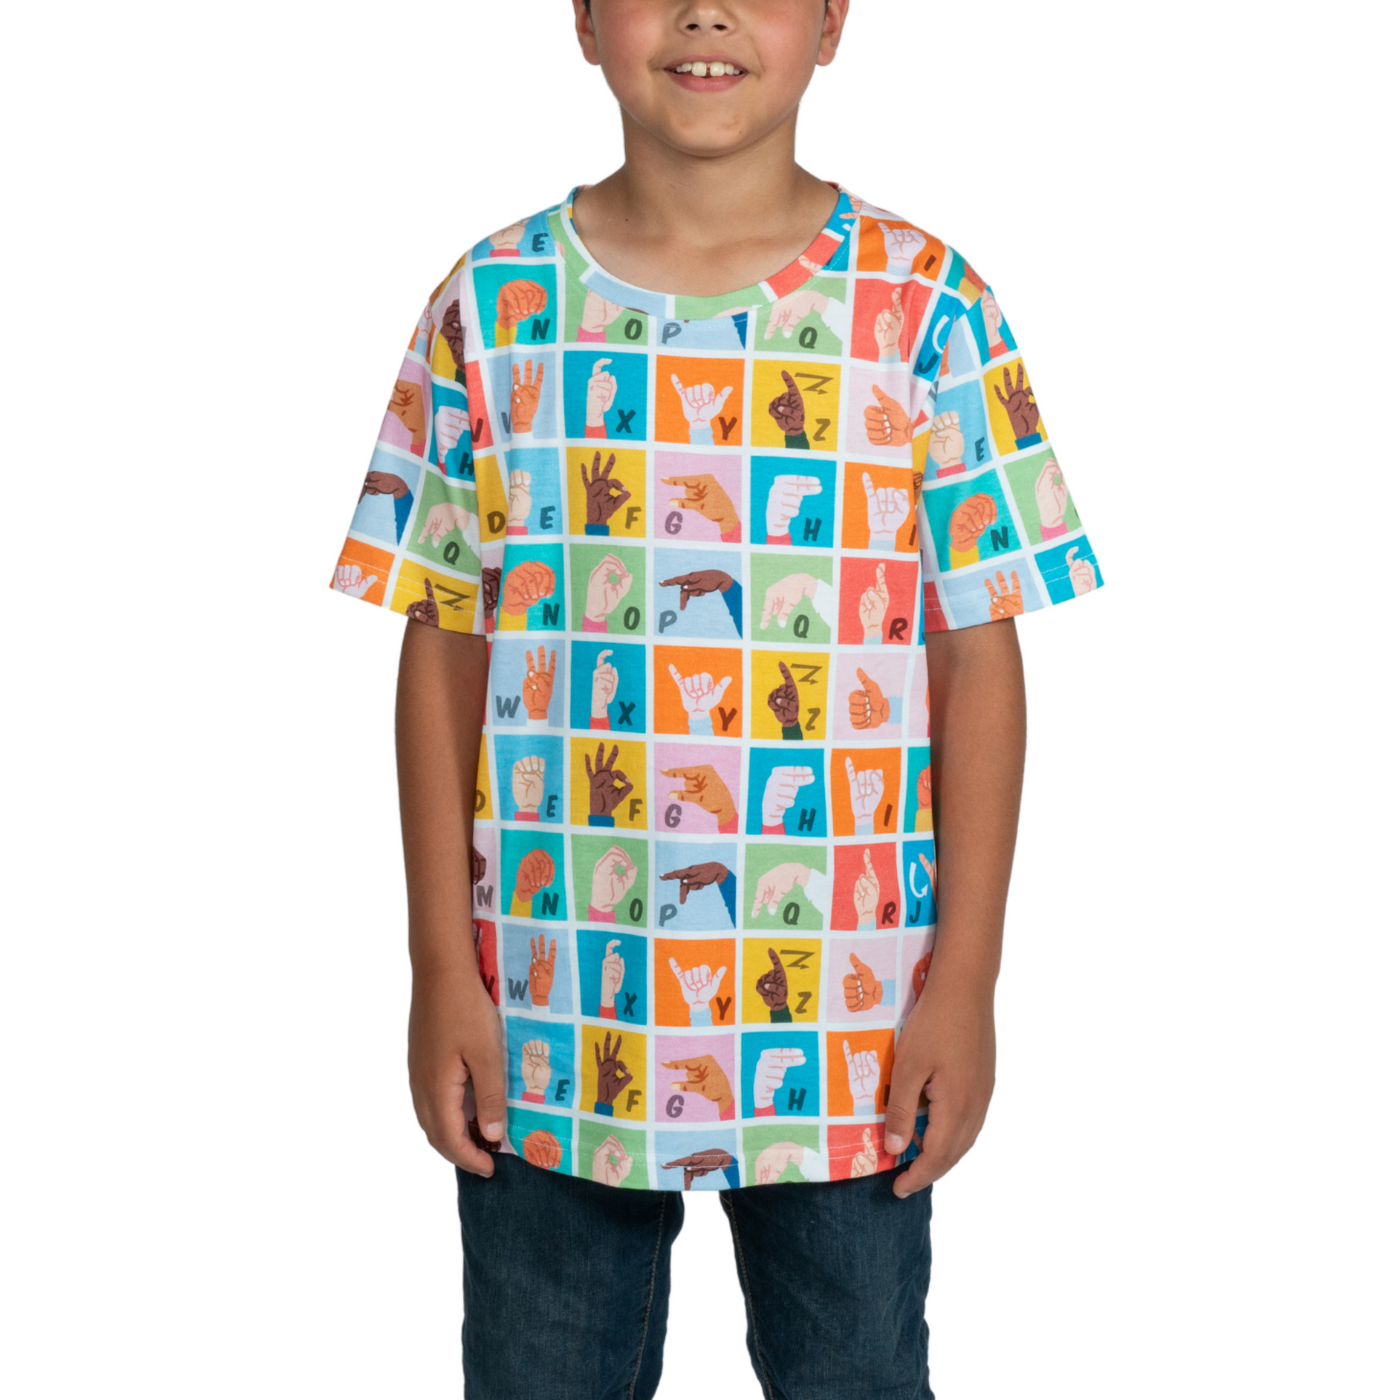 Sign Language Kids T-Shirt Sample - 11/12 YEARS